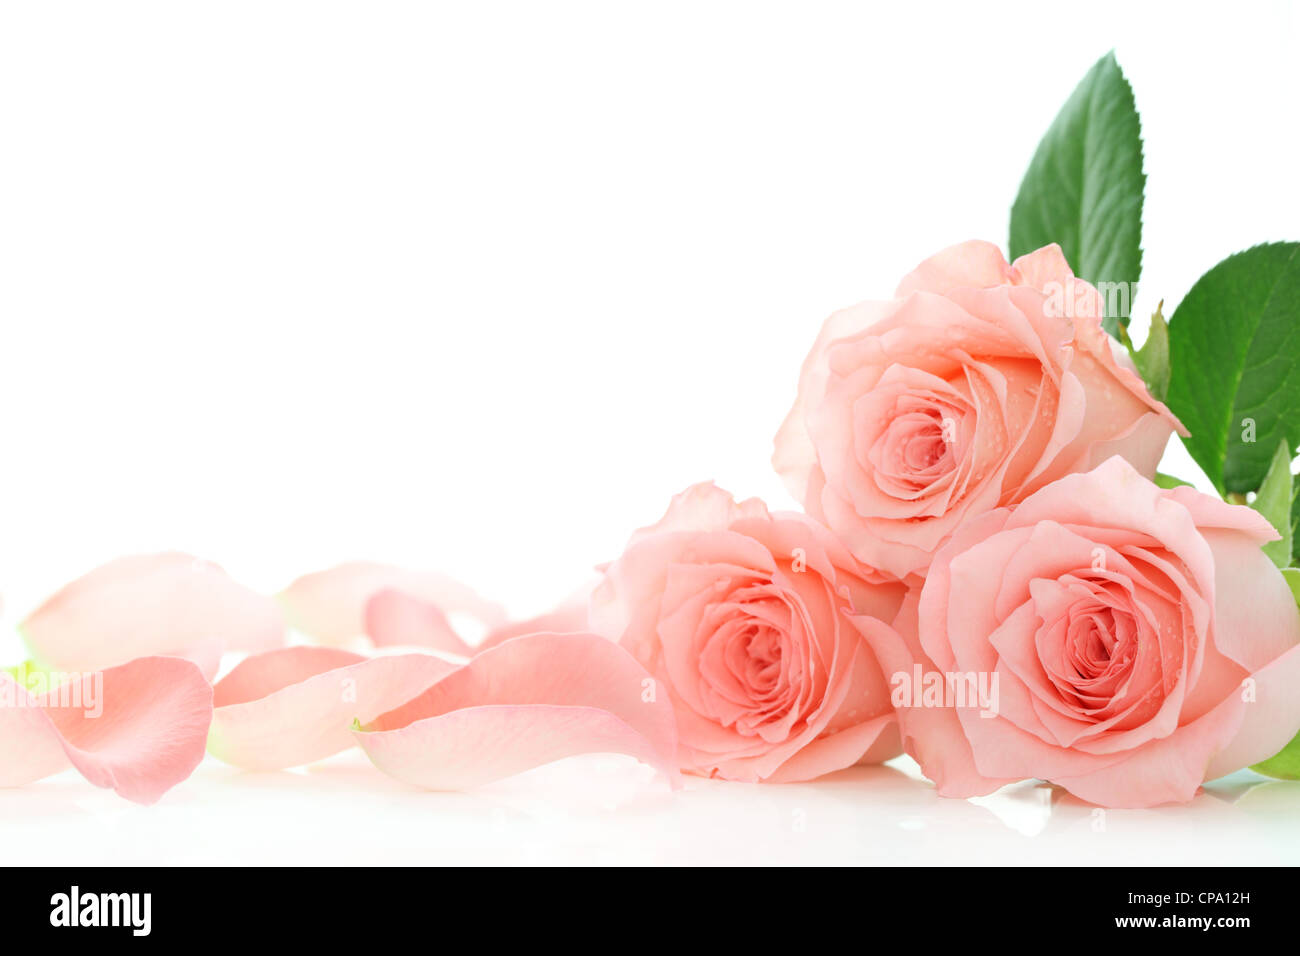 Rosa petali di rose su sfondo bianco Foto Stock